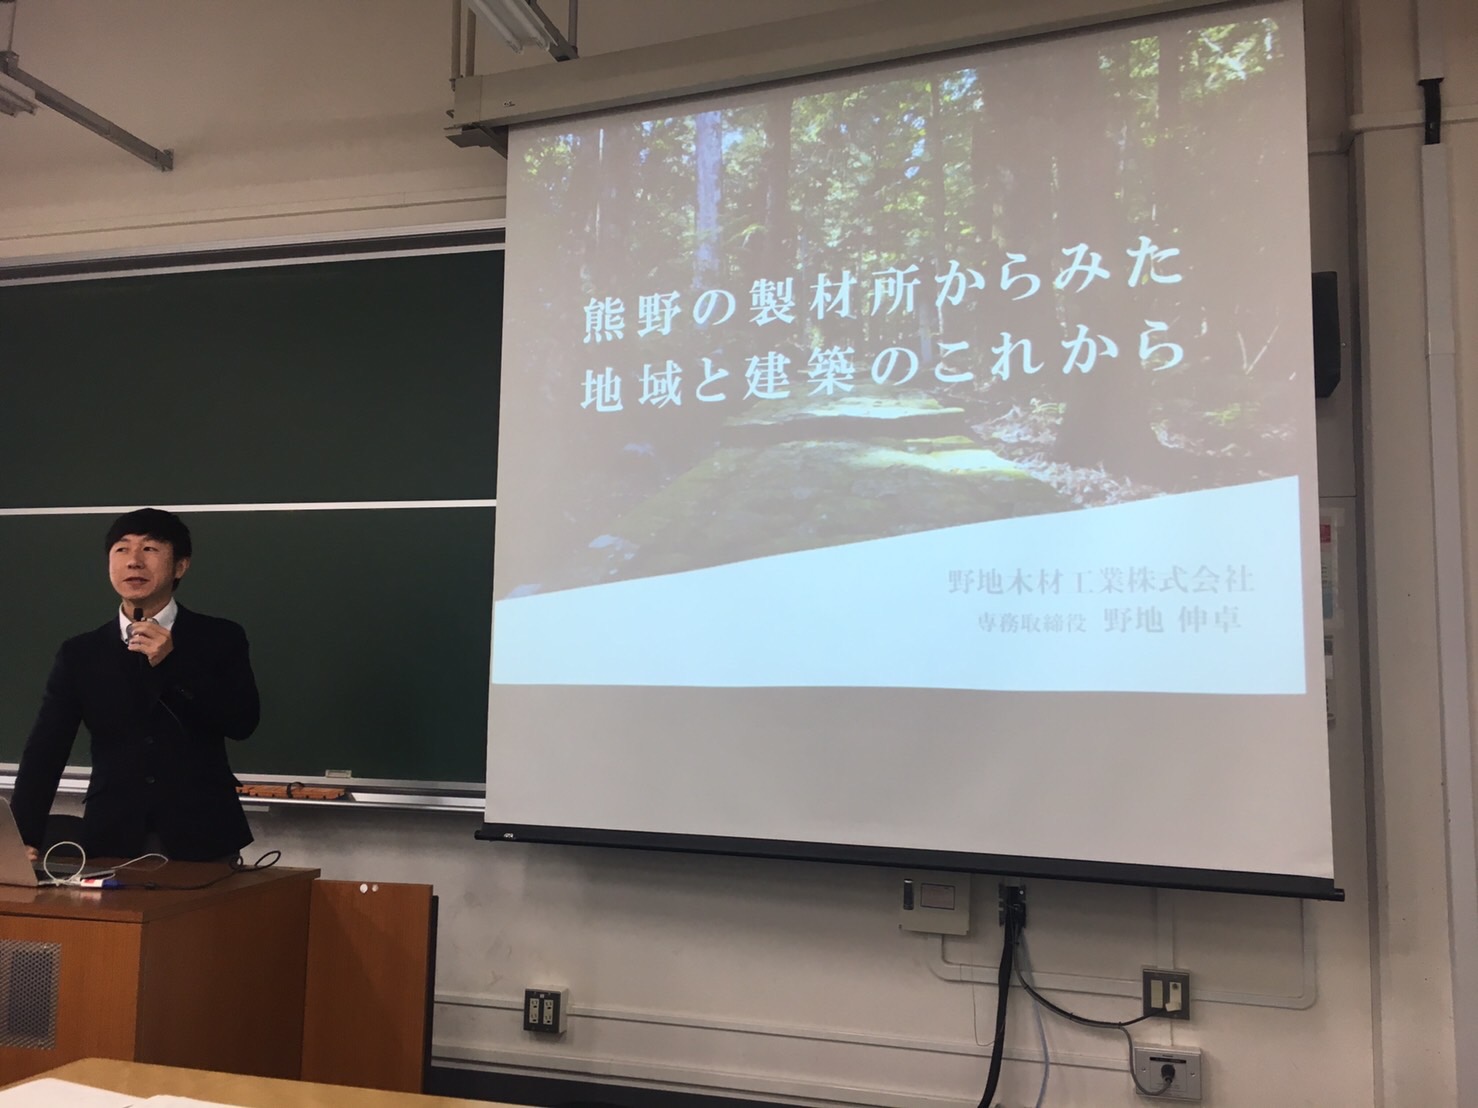 早稲田大学建築学科 「広域環境論」での特別講義の様子(2017.1.13)